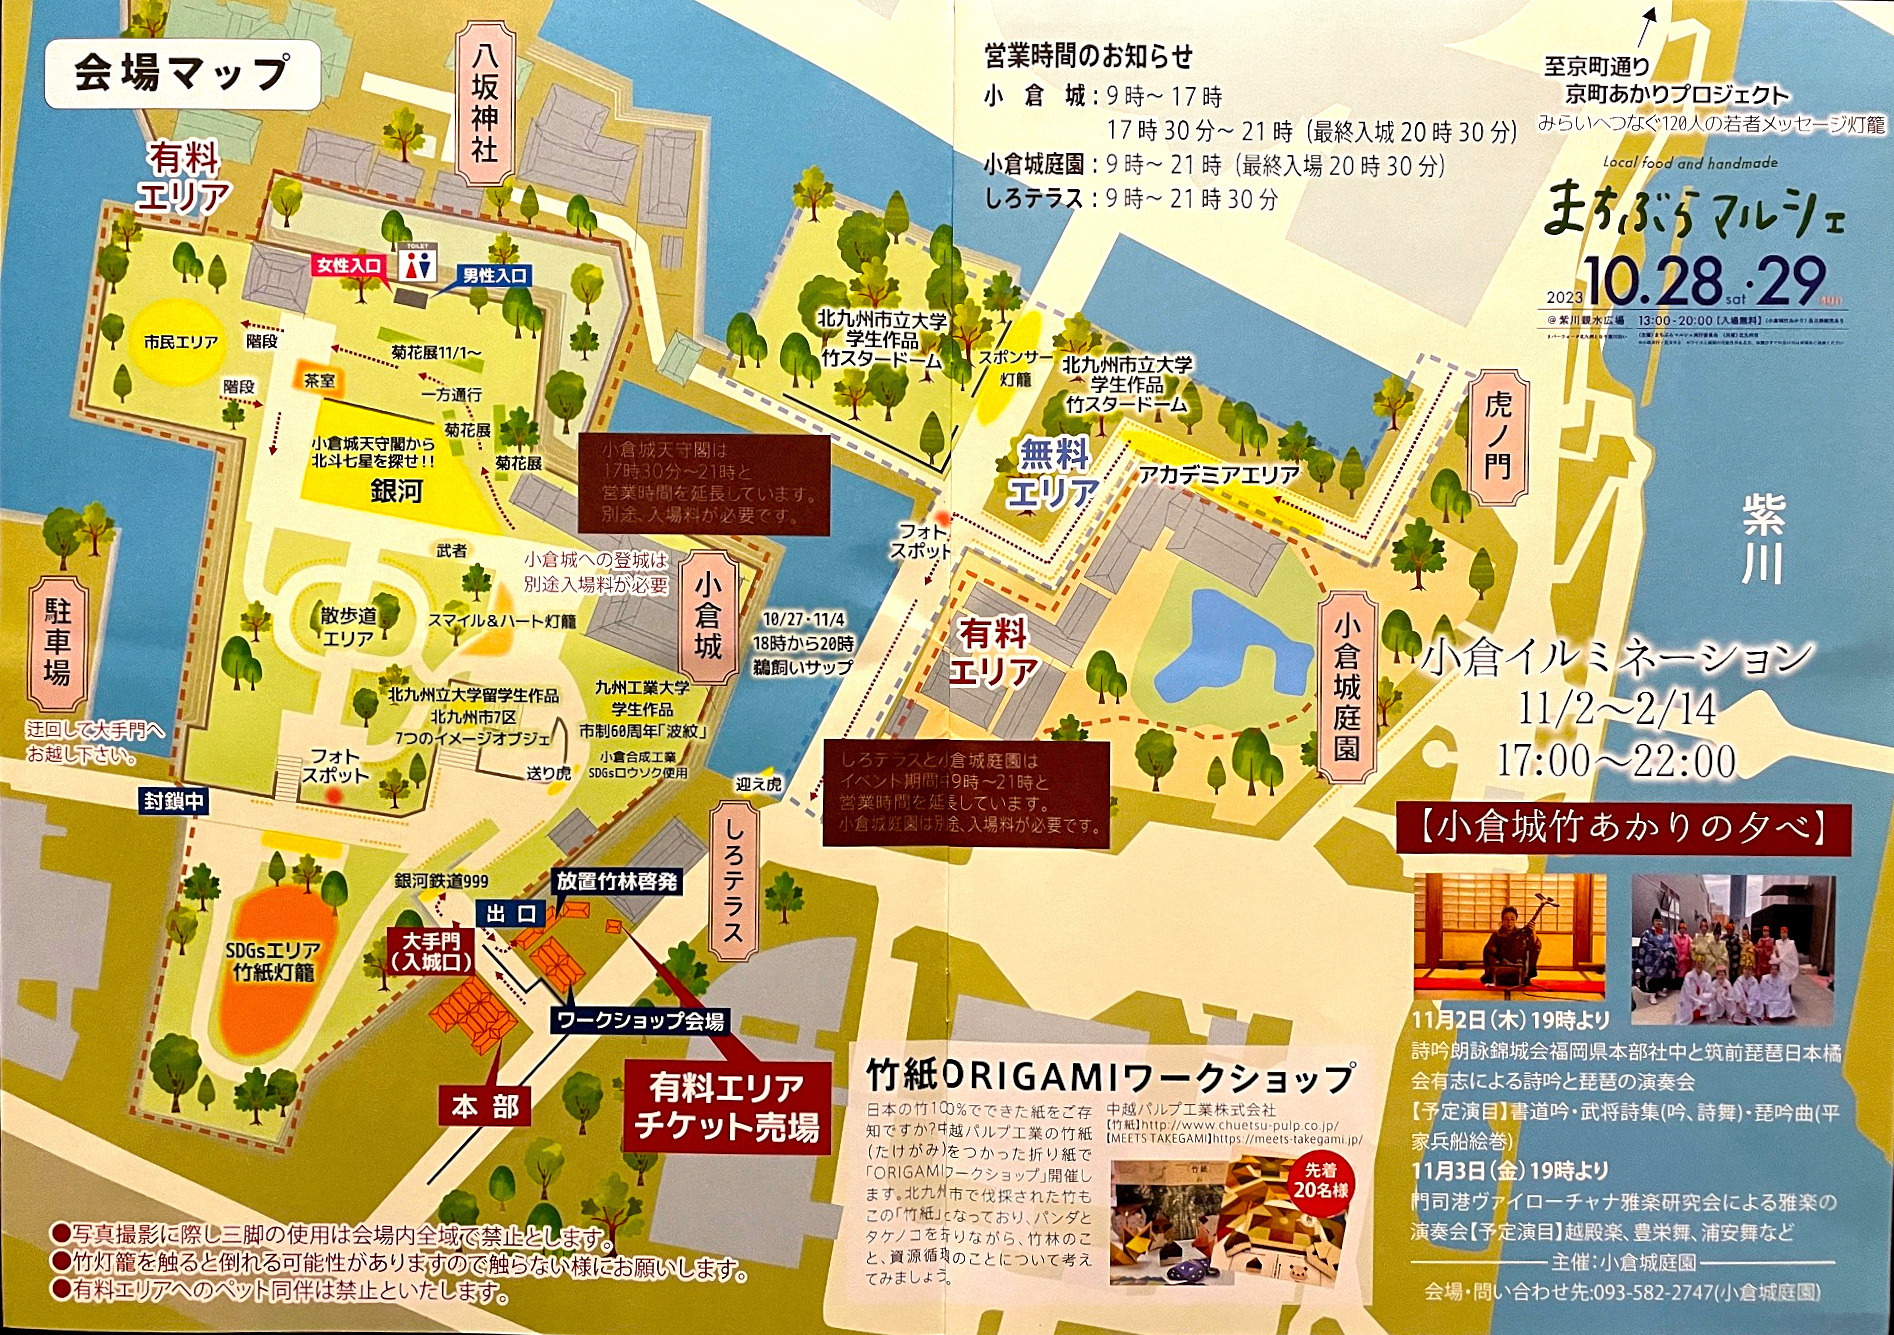 入口で配られたパンフレットの案内図。小倉城は朝から開いてますが、イベントは夕方からです。